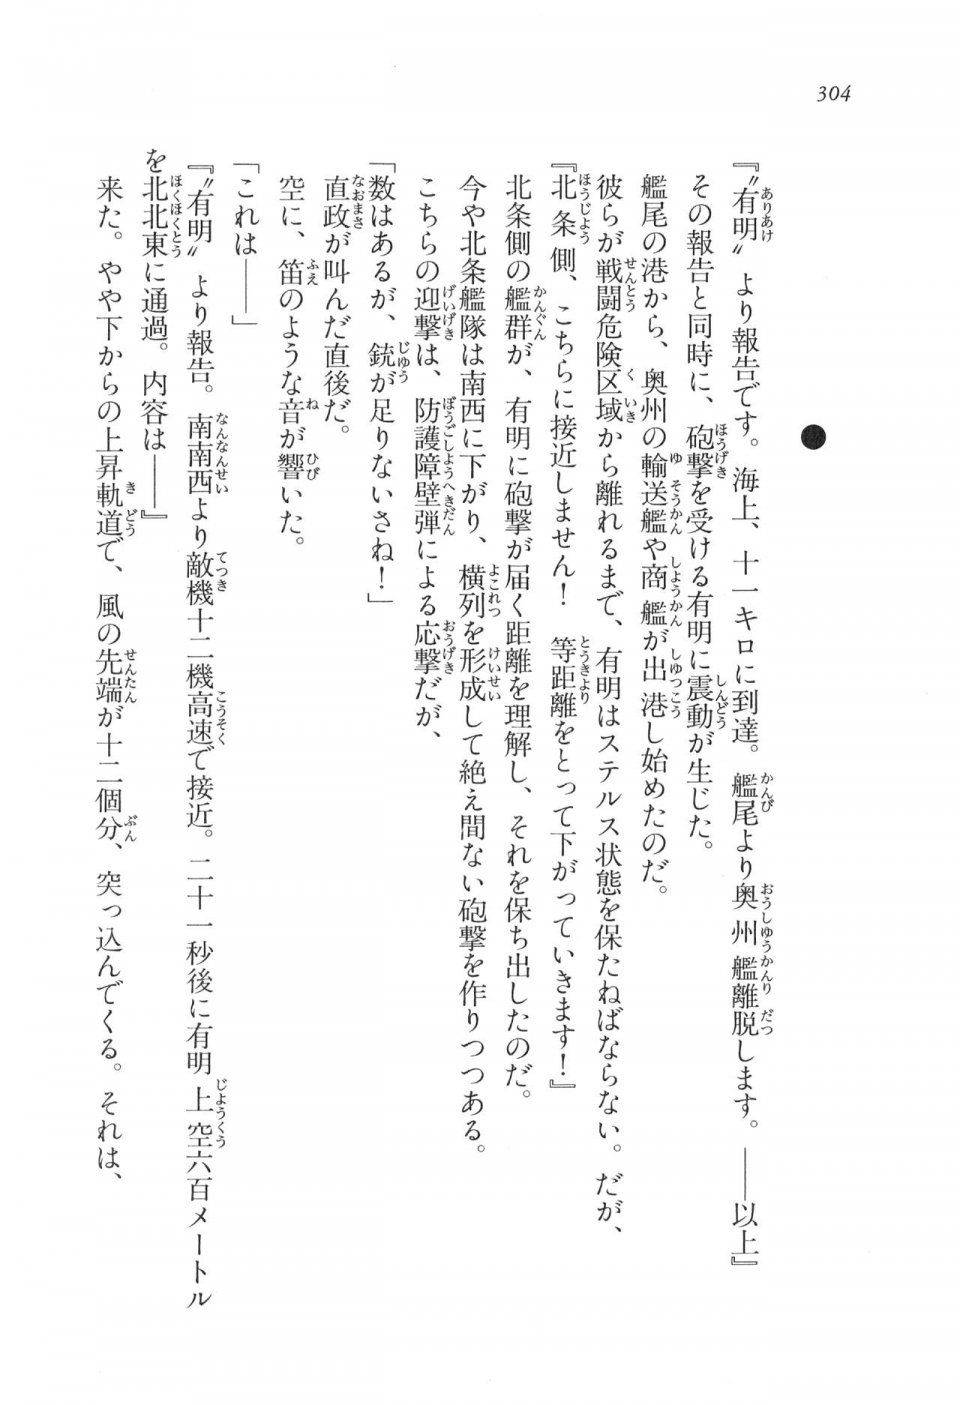 Kyoukai Senjou no Horizon LN Vol 11(5A) - Photo #304